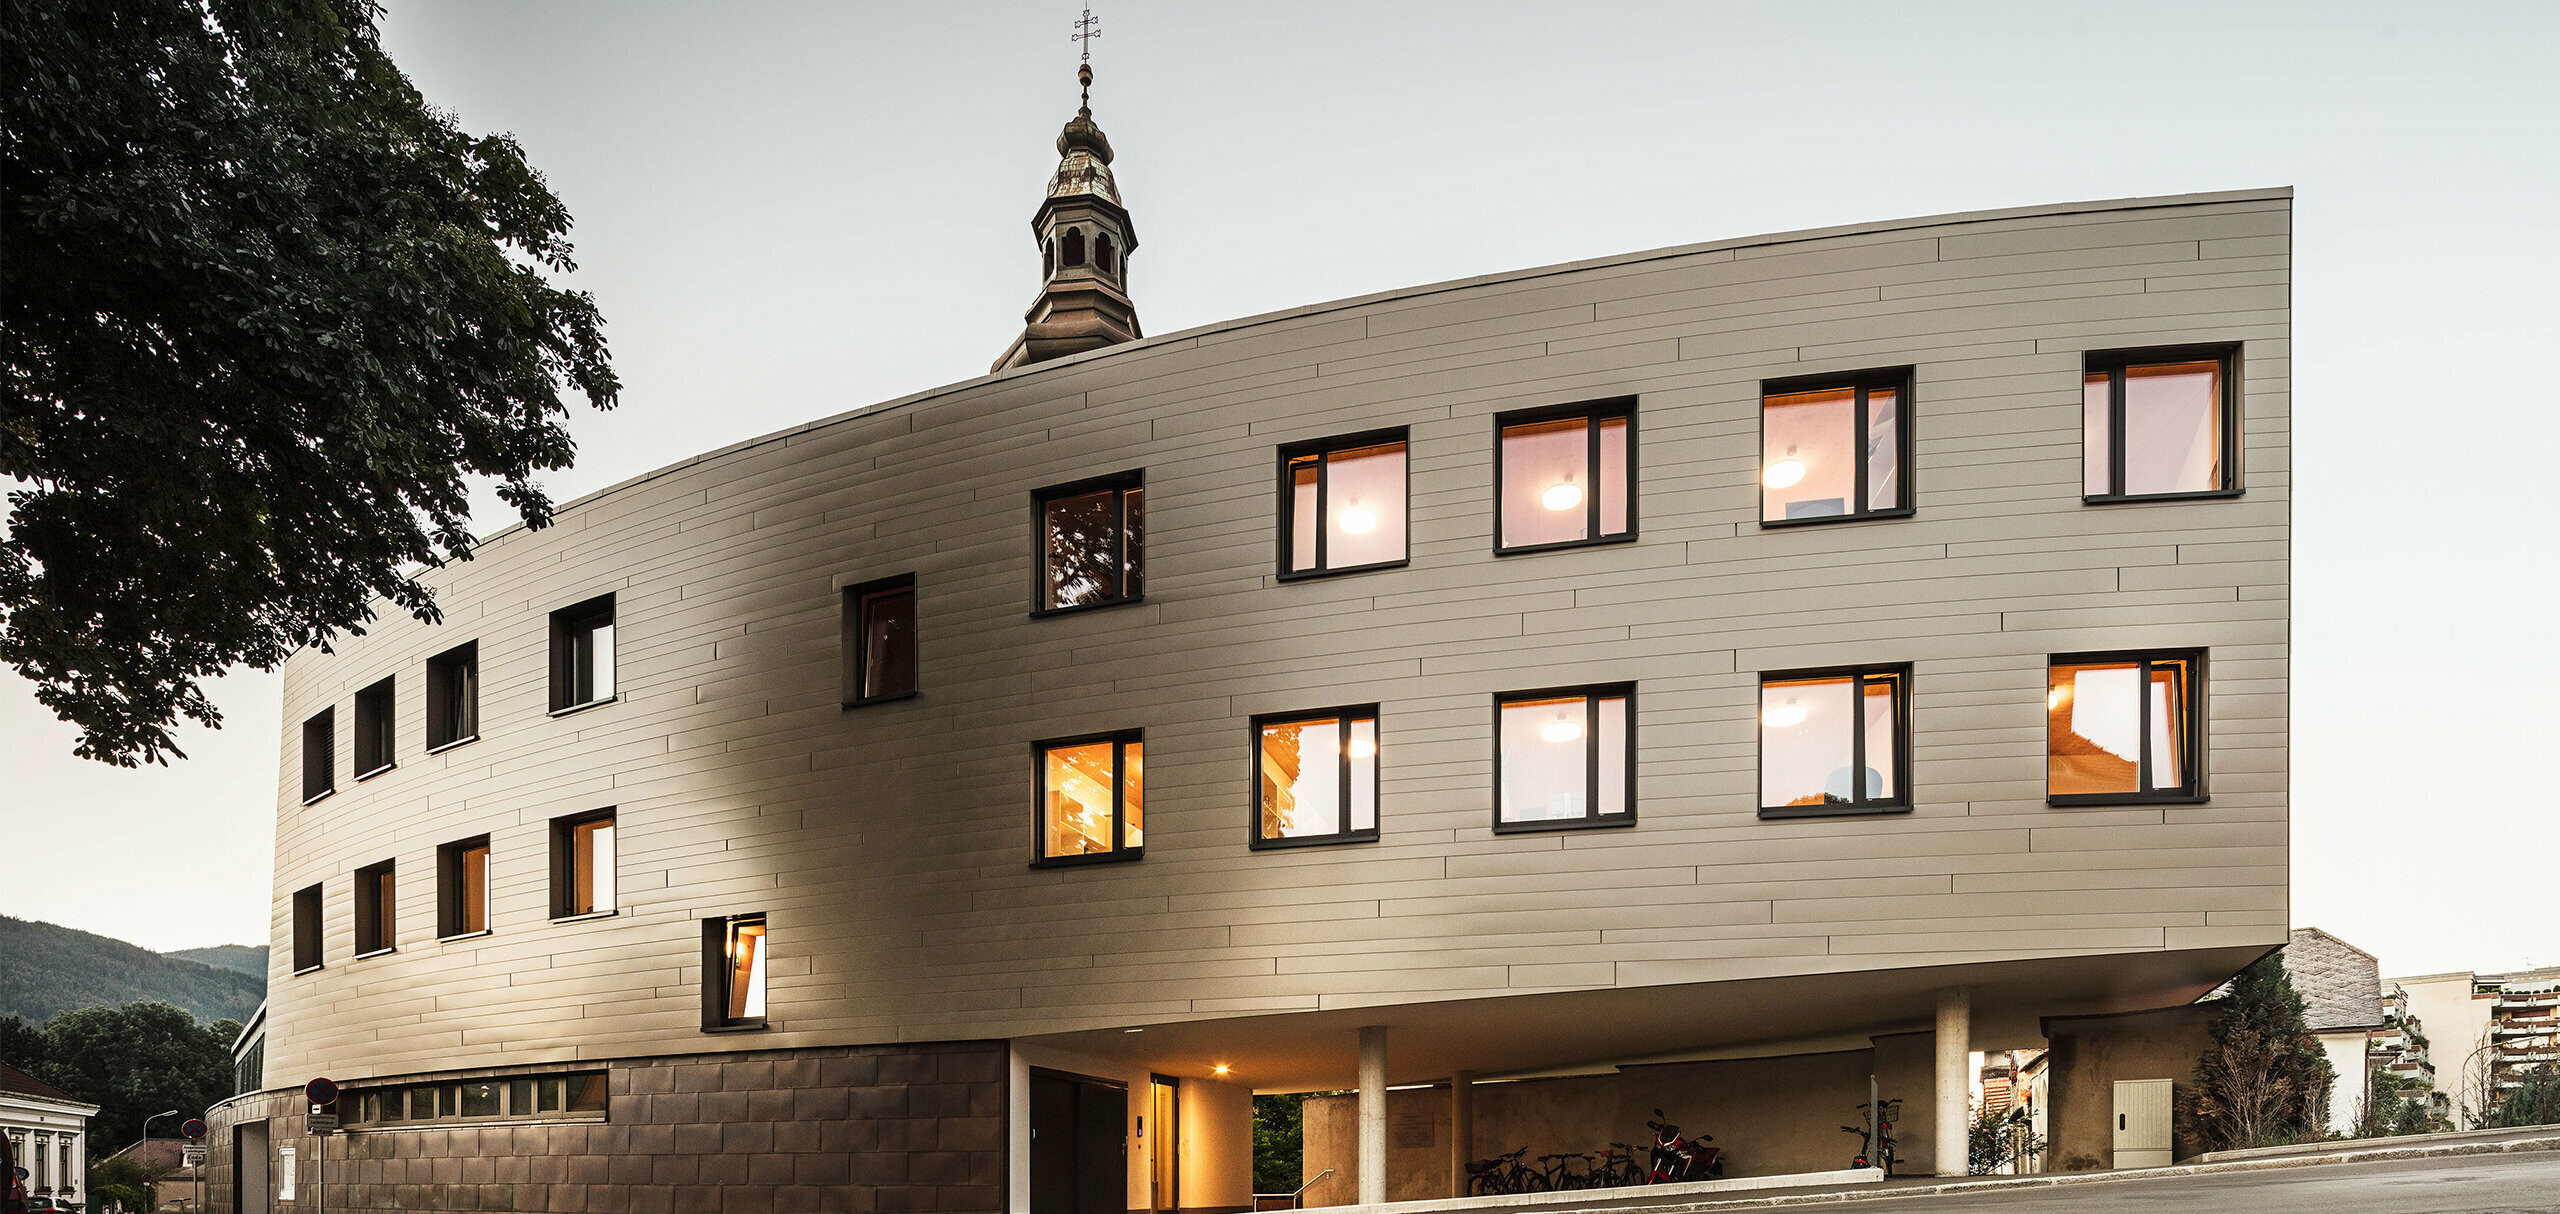 Nowy budynek akademika Jacobinum, wykorzystujący stare mury plebanii, został pokryty brązowym sidingiem PREFA